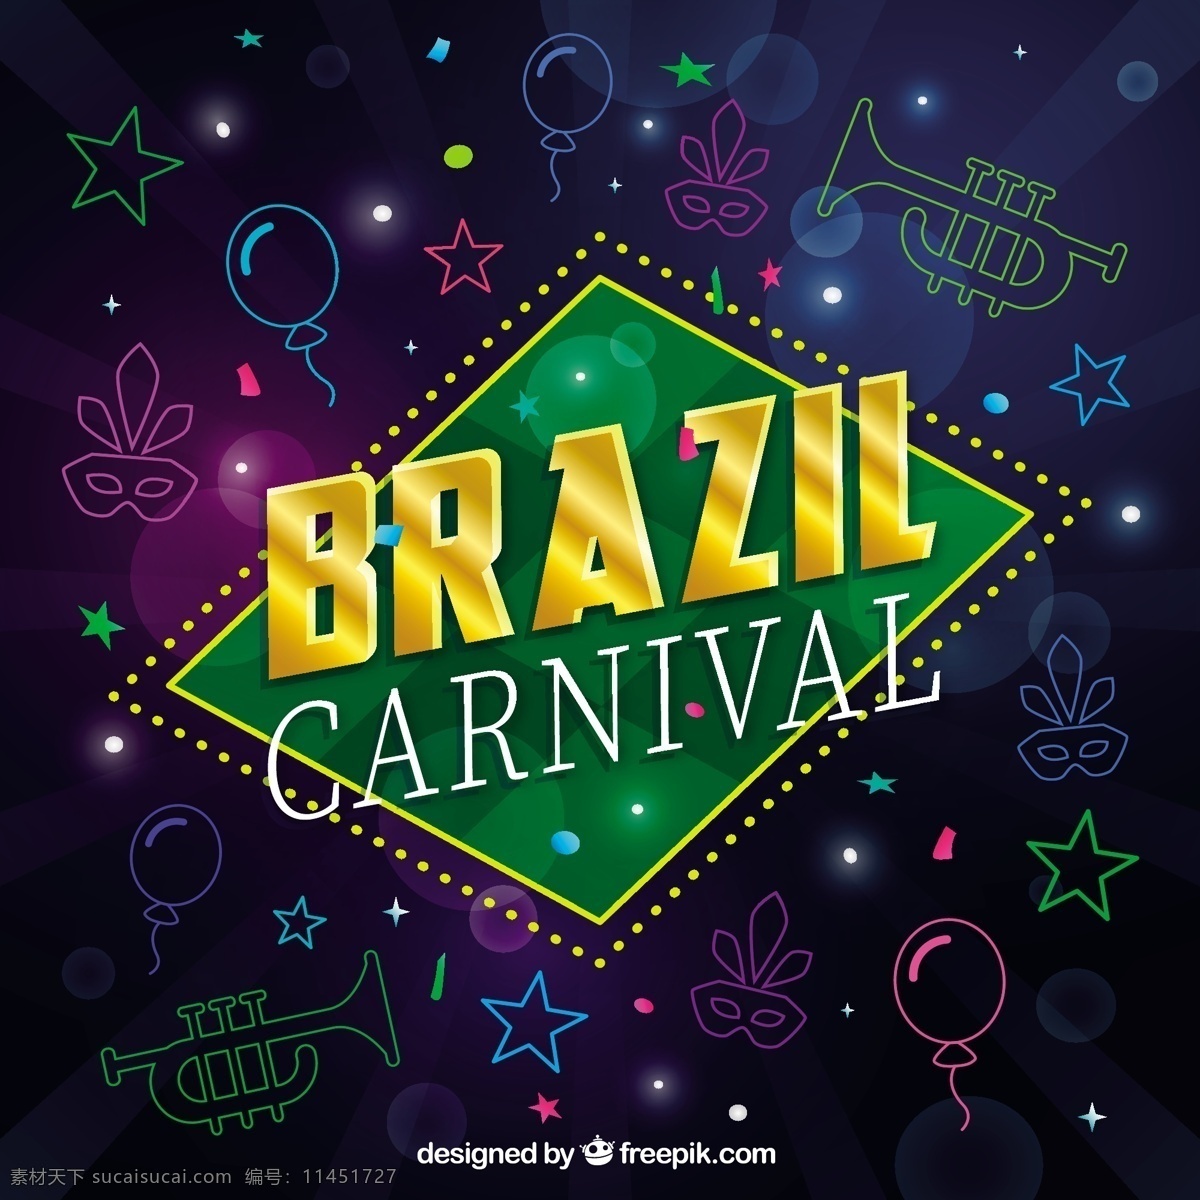 巴西 狂欢节 元素 背景 的背景下 党的手 徽章 手绘 狂欢 明星 庆典 节日 事件 面具 气球 绘图 娱乐 喇叭 黑色